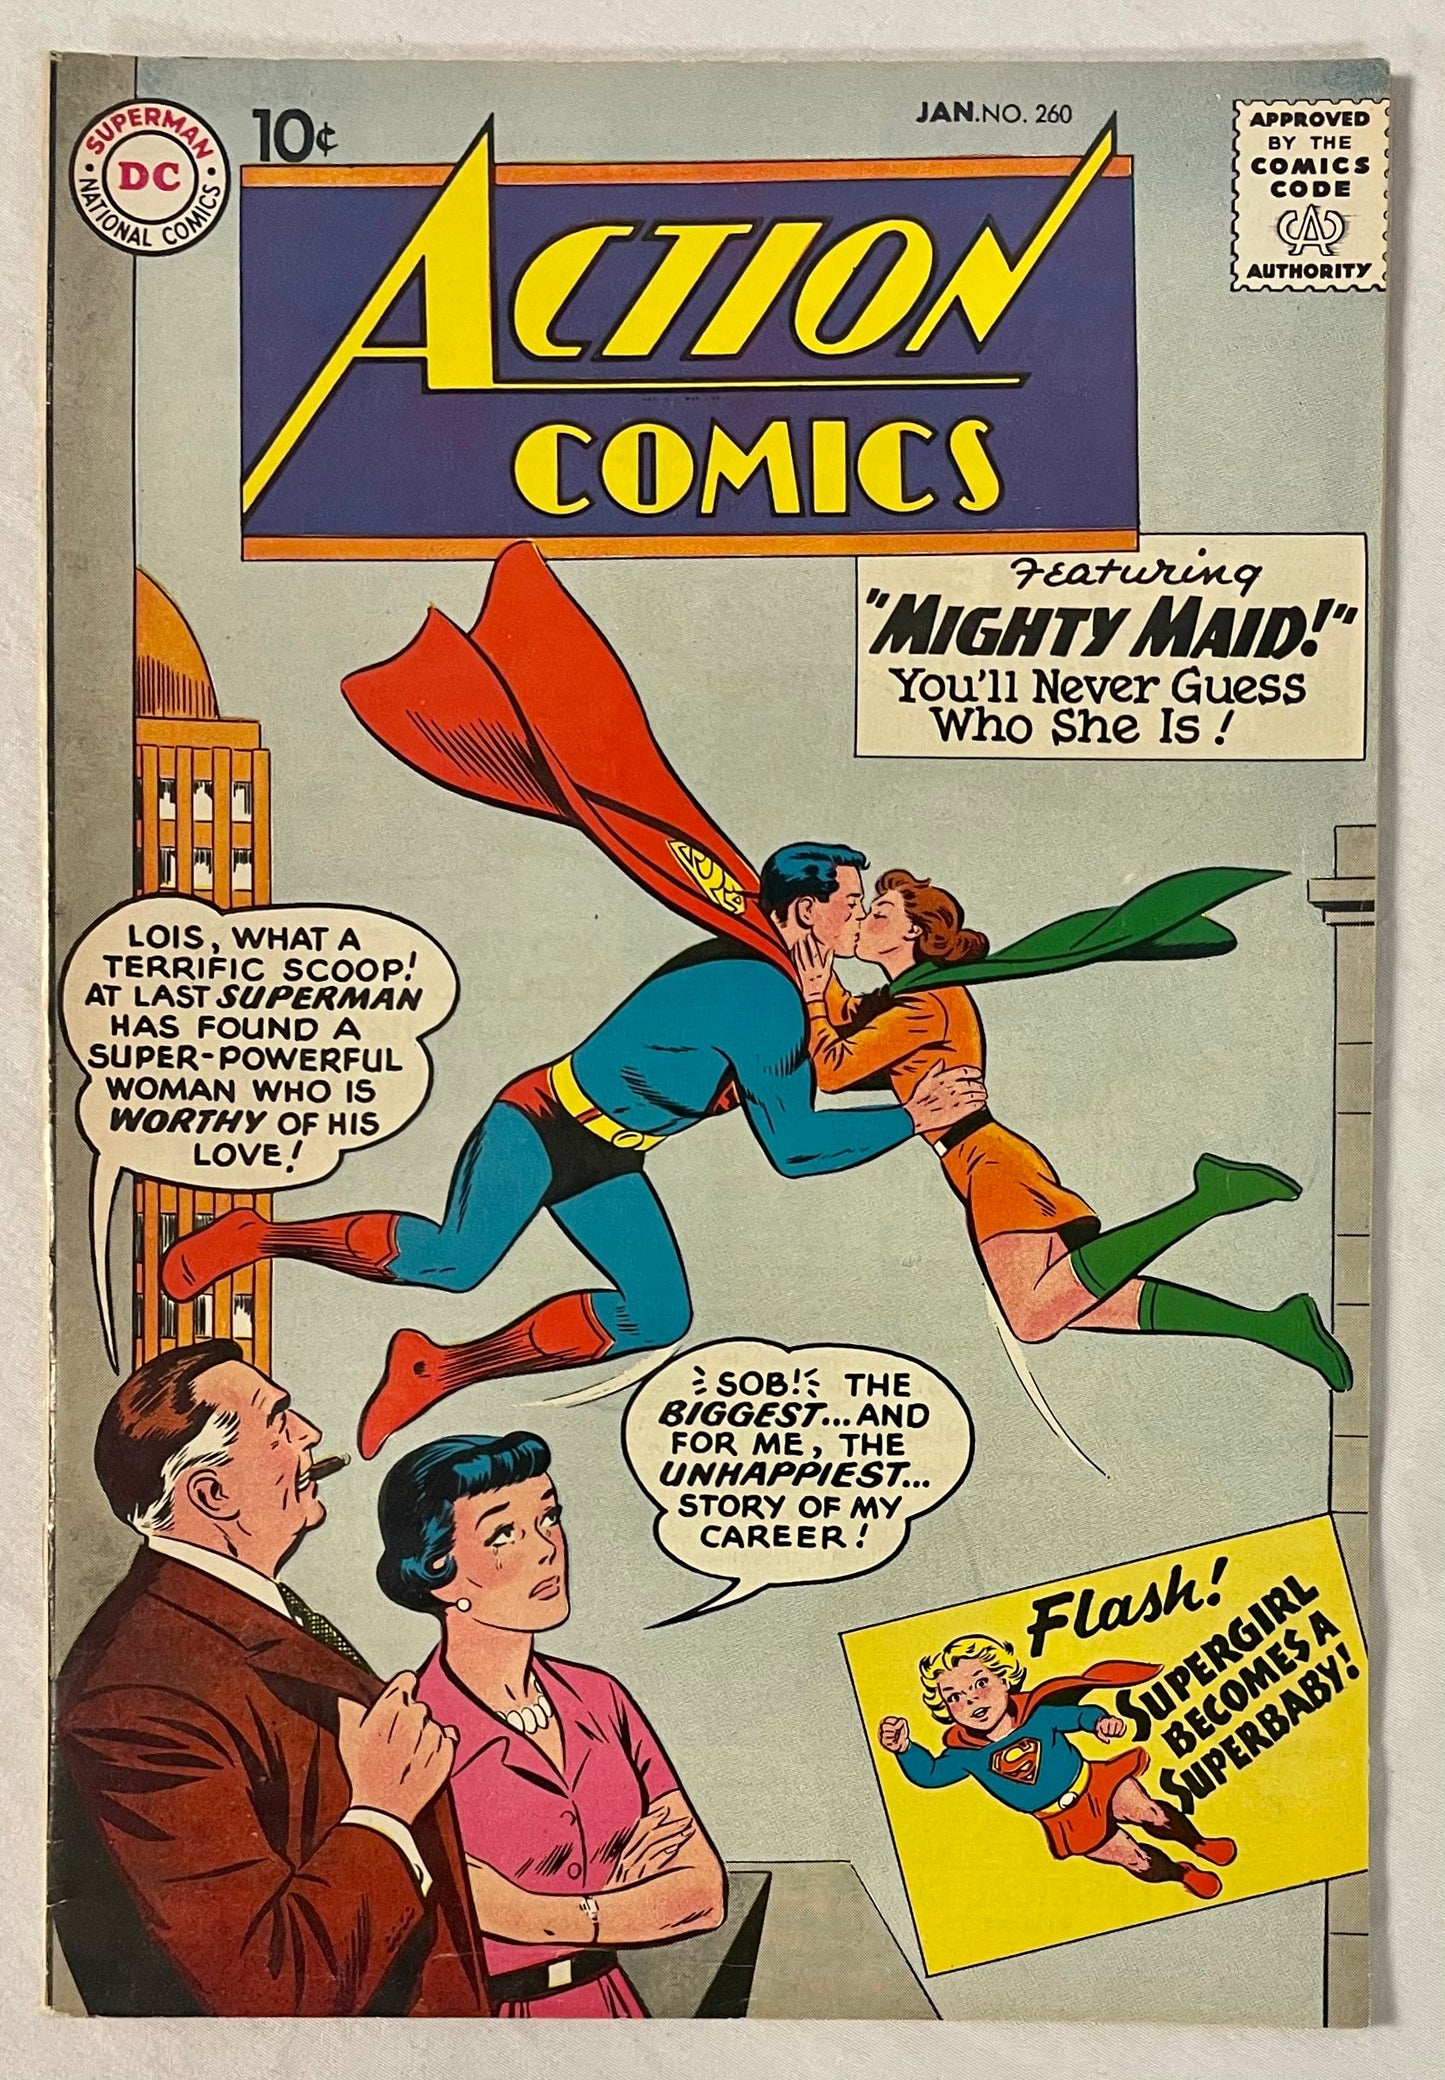 DC Comics Action Comics No. 260